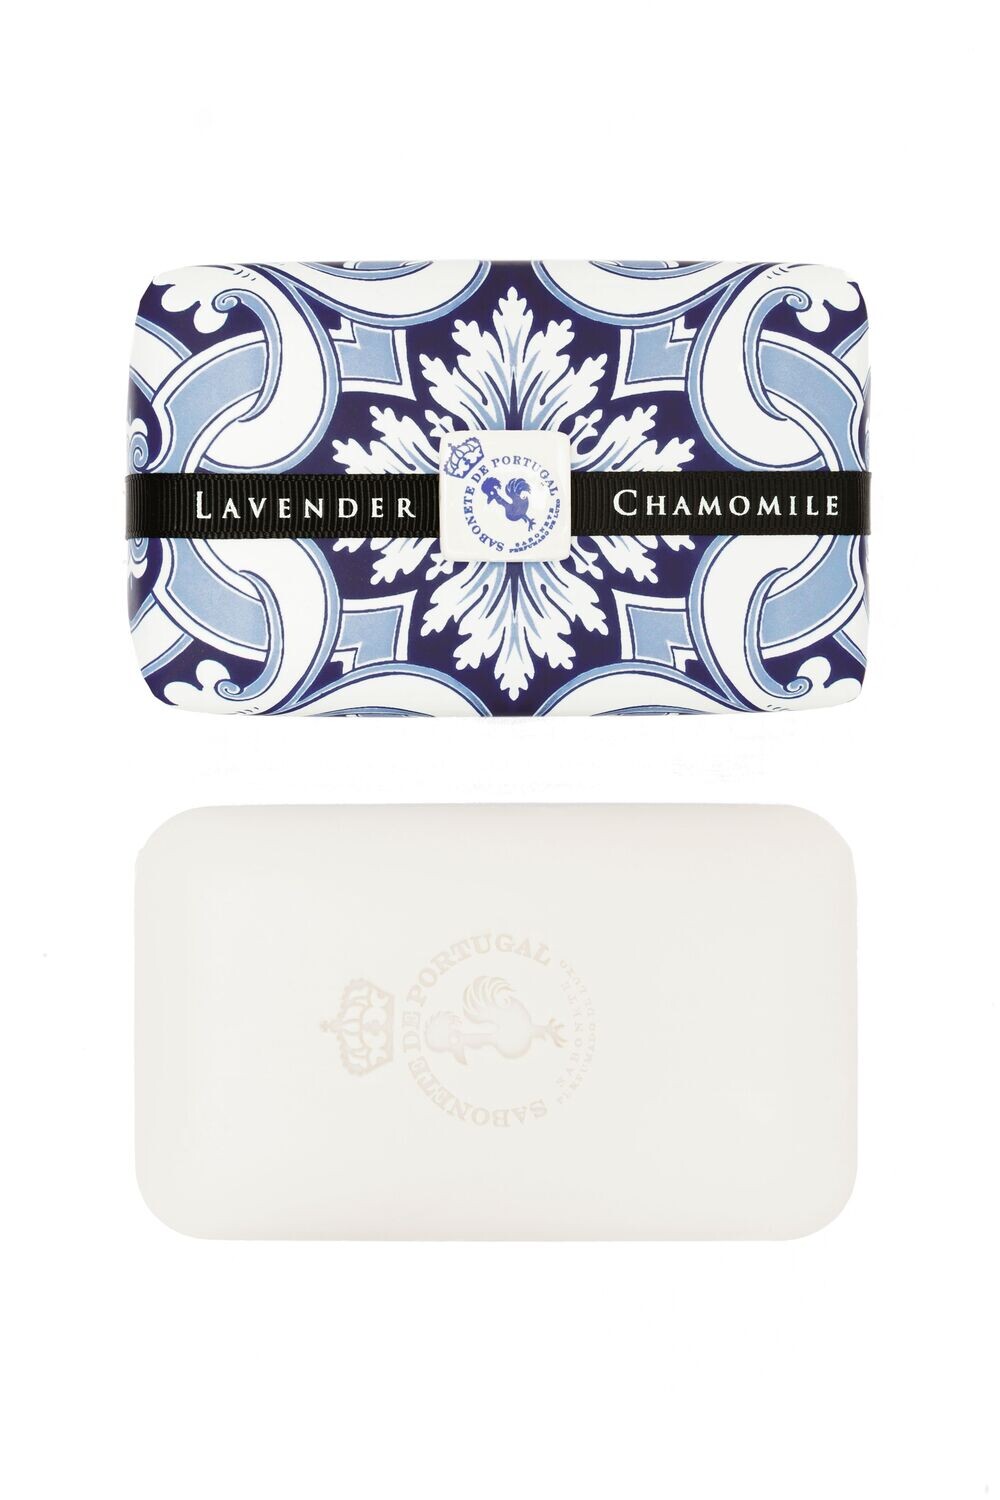 Castelbel Tile Lavender & Chamomile Soap Bar